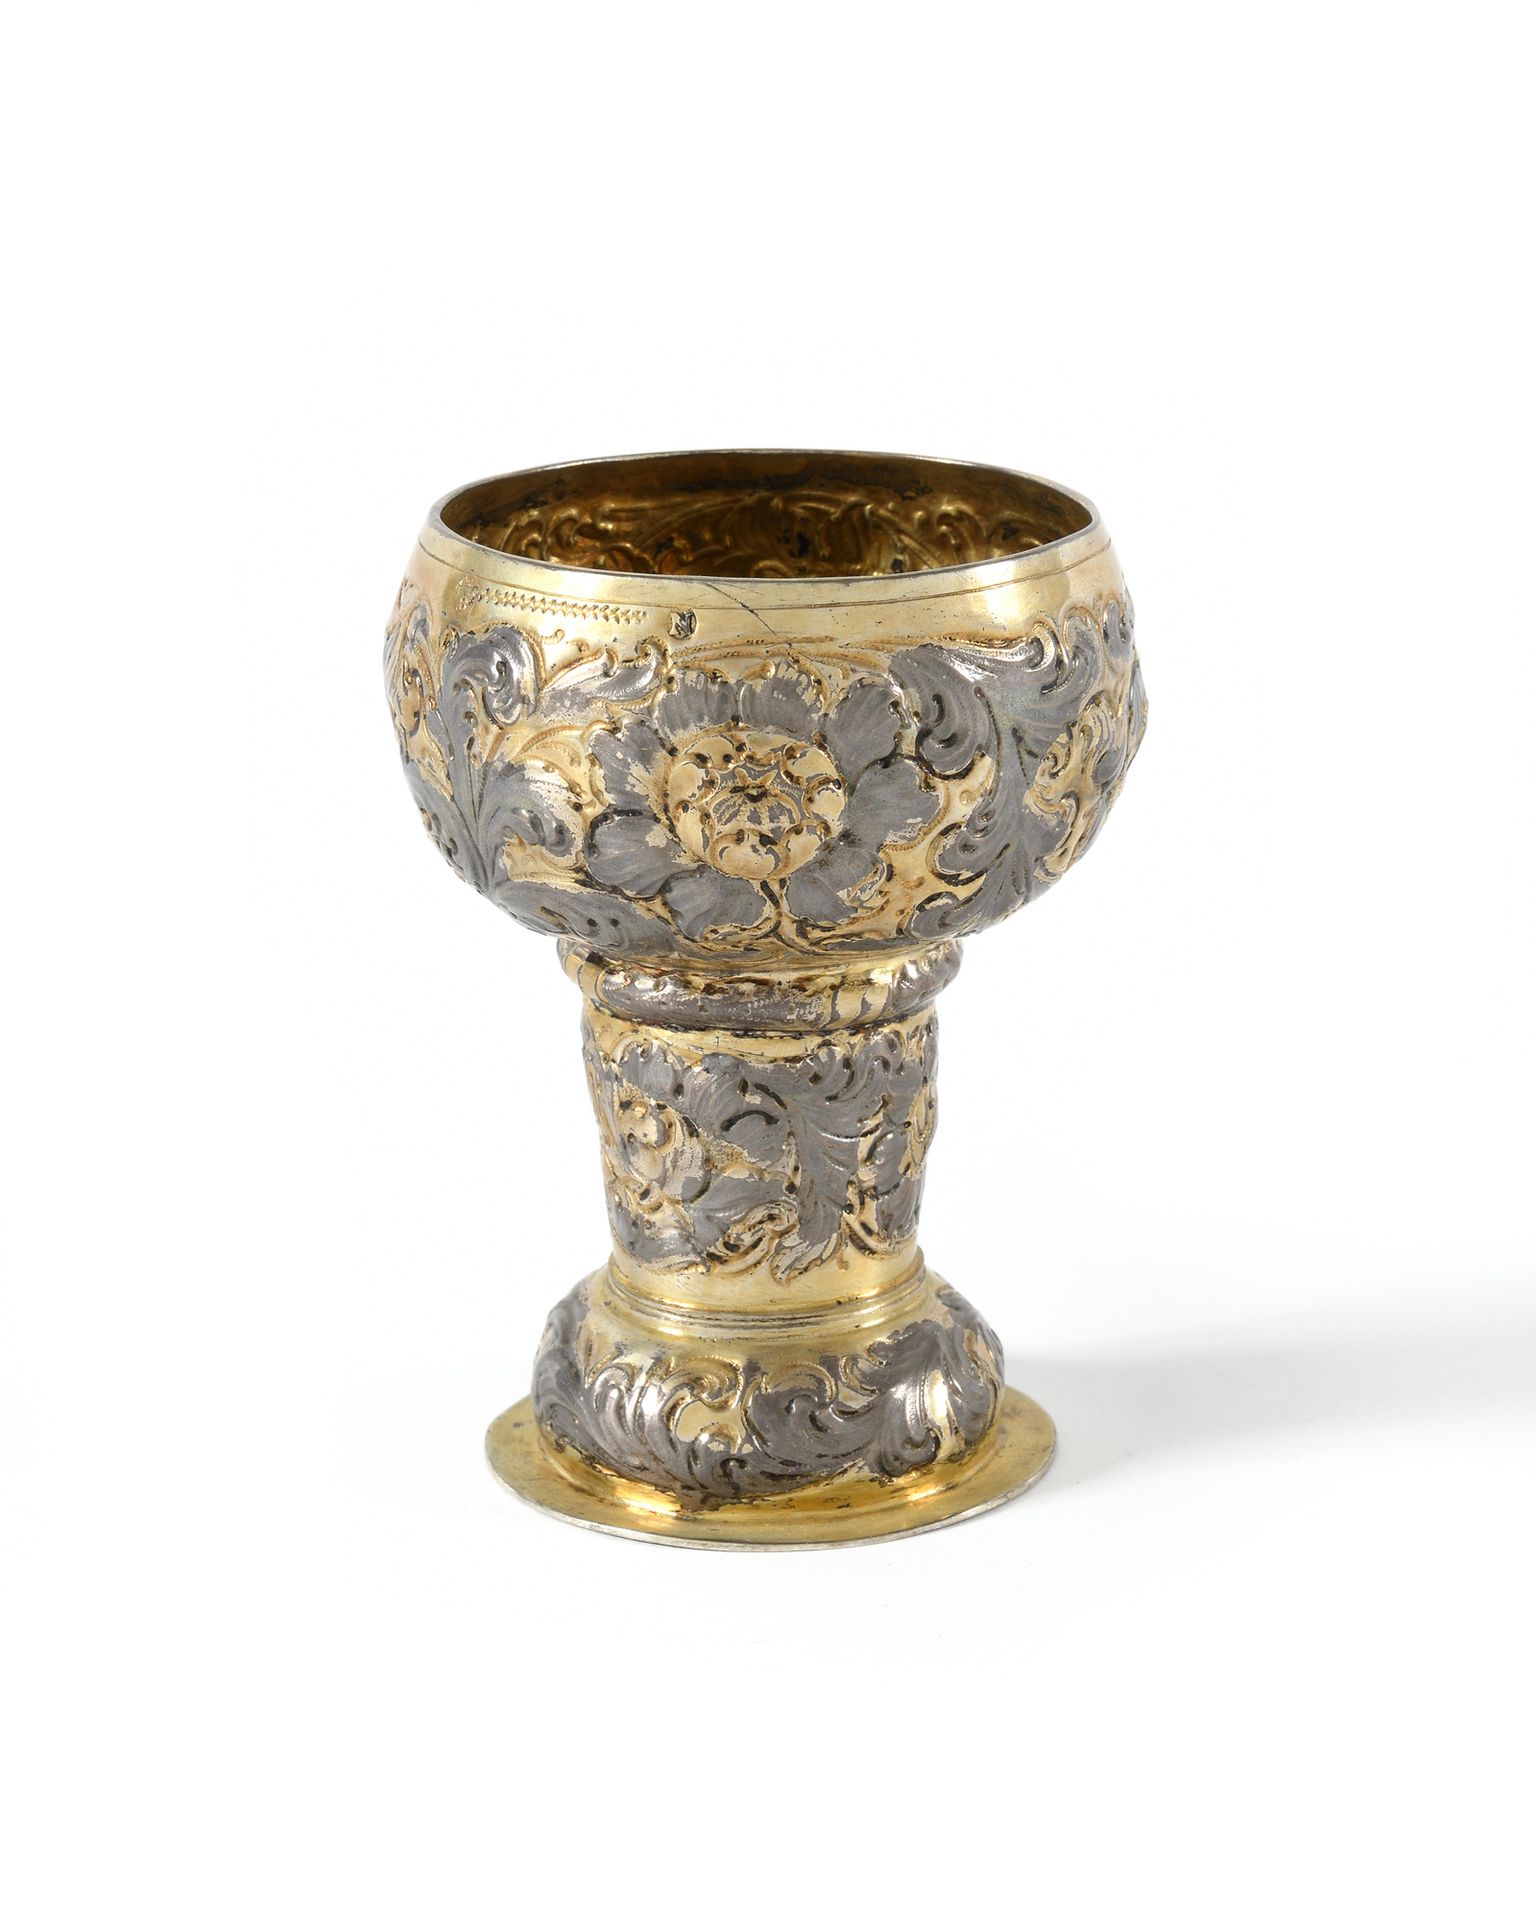 Null 罗默杯，镀金，圆座，有罂粟花和刺桐叶的回纹装饰 纽伦堡，约1680年 高度10厘米，重量85克